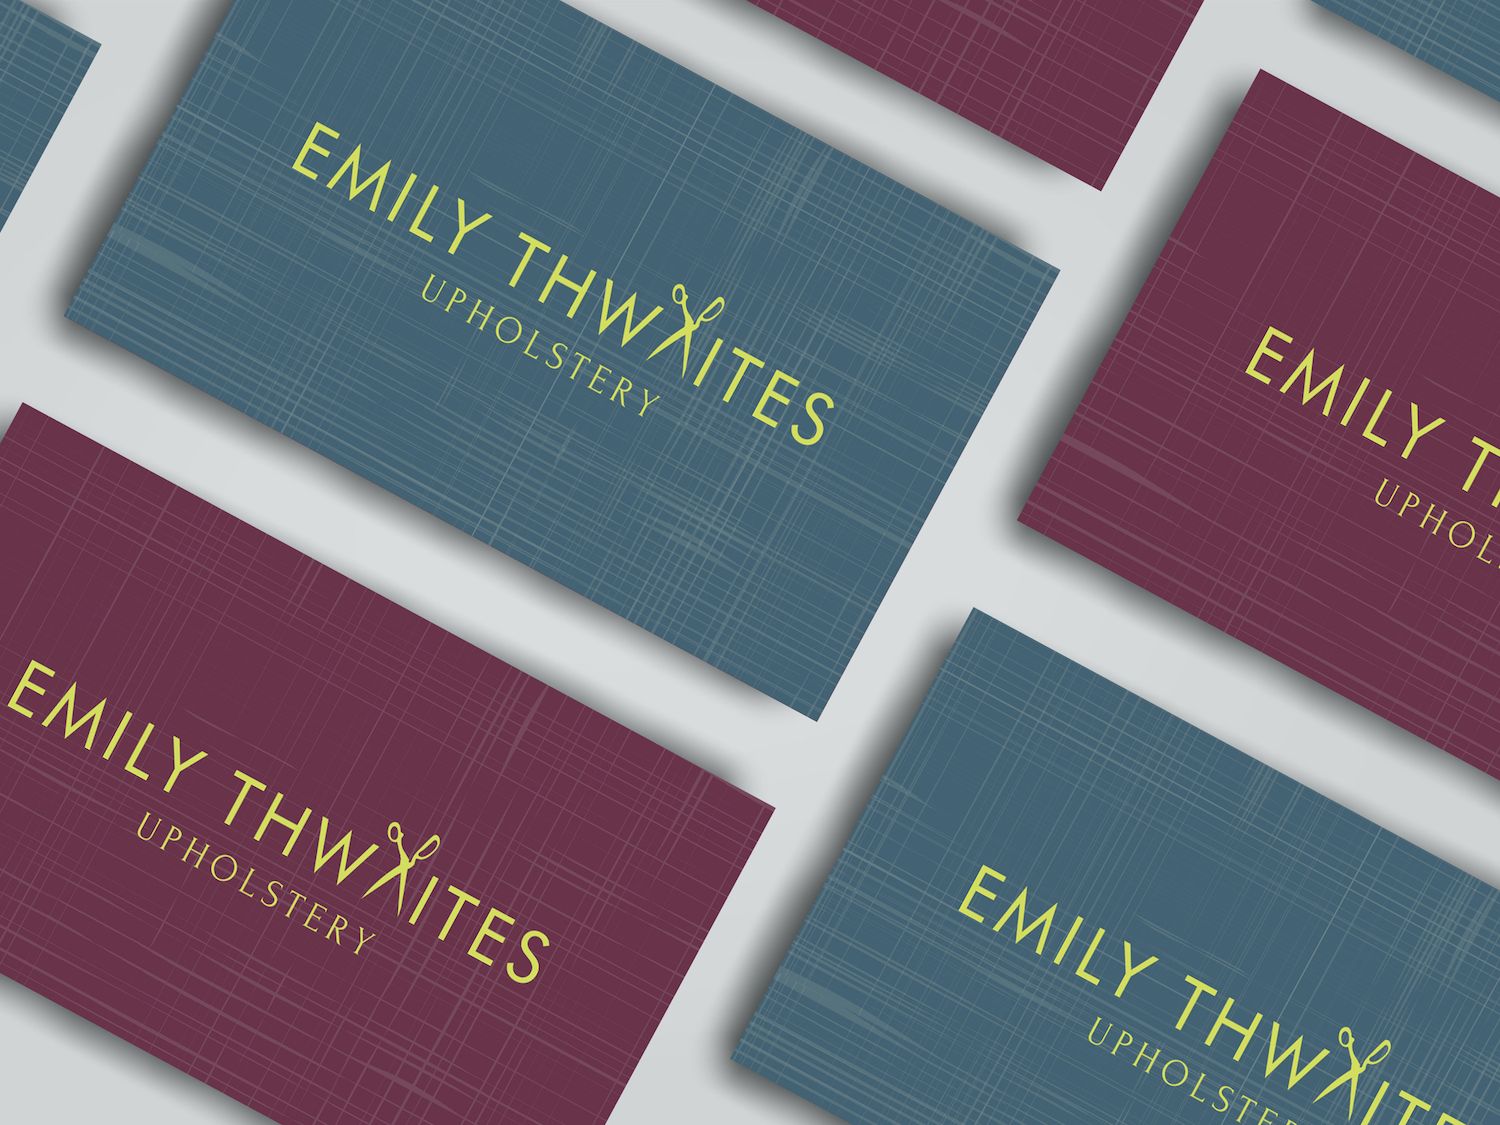 Emily Thwaites Upholstery